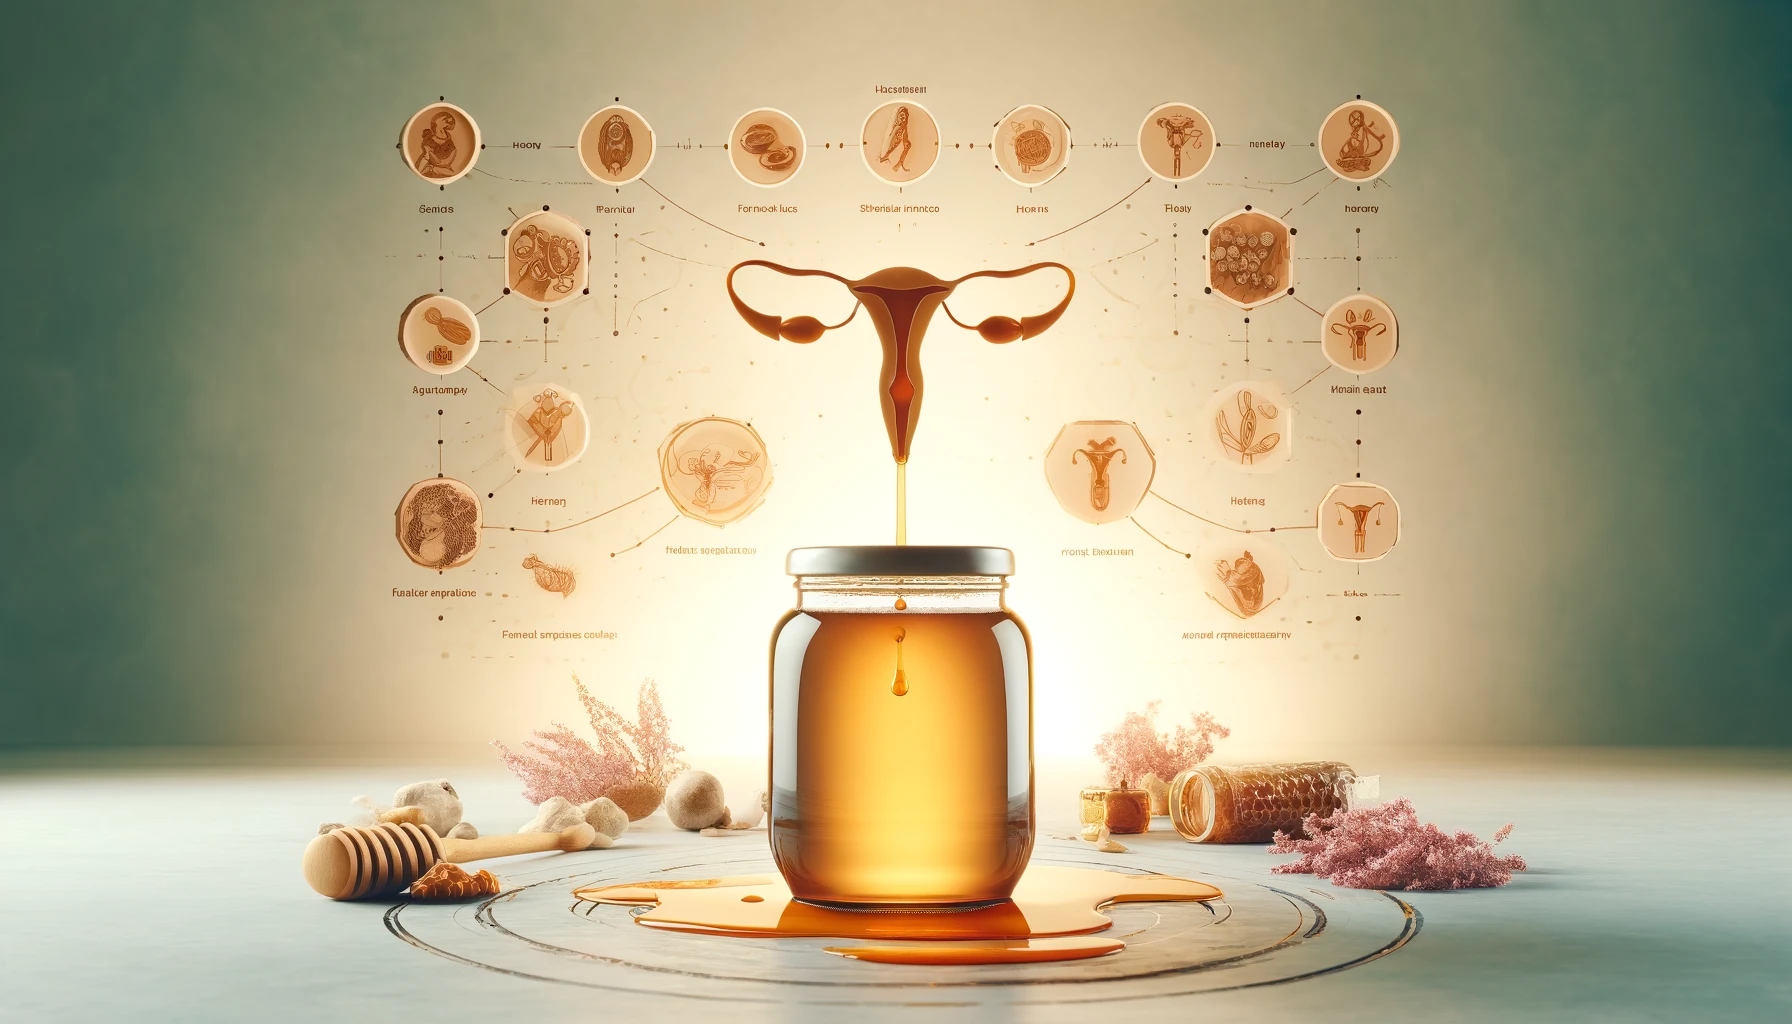 صمم صورة افقية مستطيلة الشكل بقياس 1200800 عن الأمراض النسائية وأفضل وصفات العسل لعلاجها